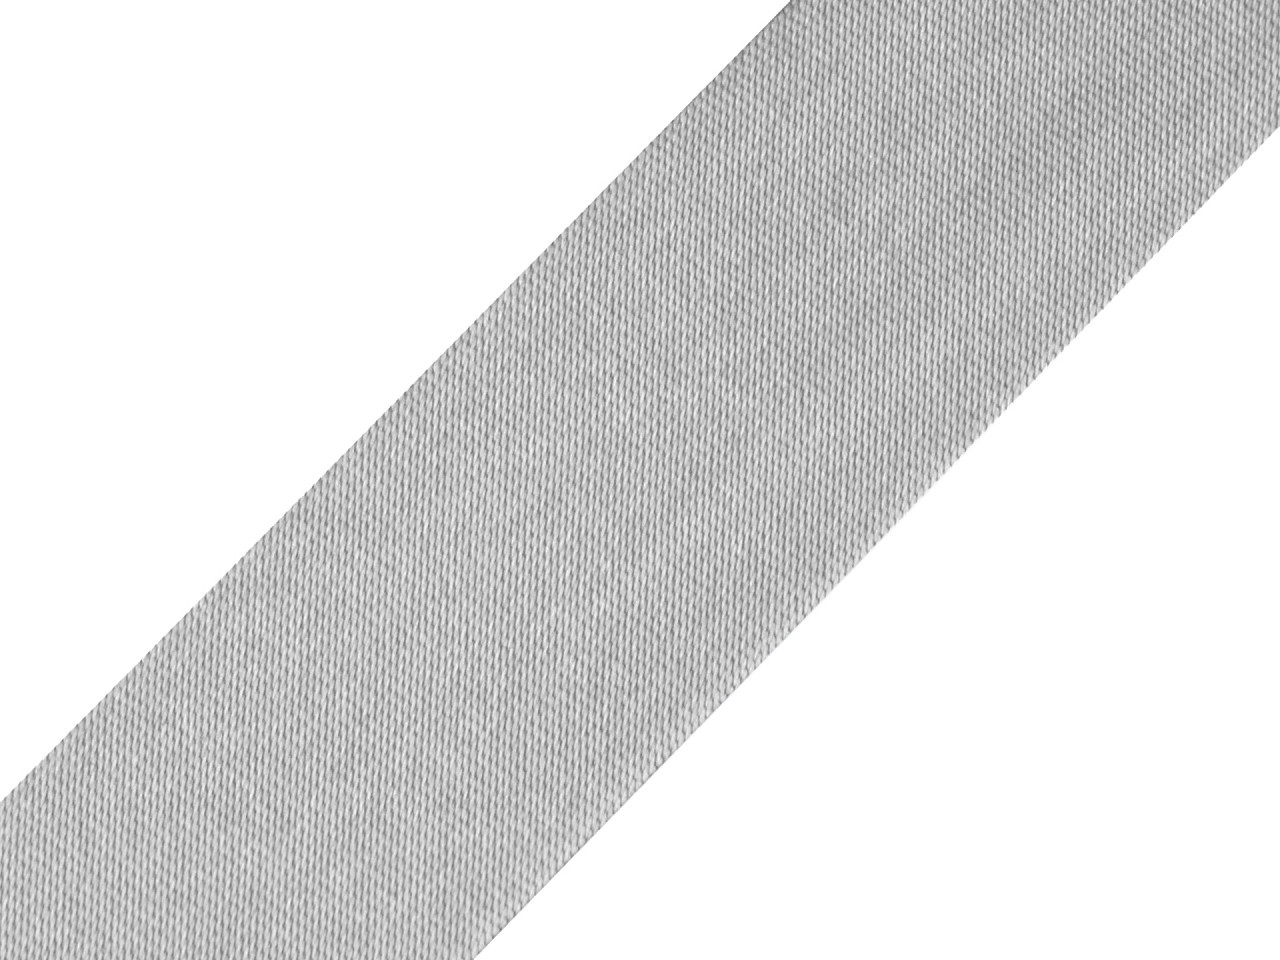 Šikmý proužek saténový šíře 30 mm zažehlený, barva 187 šedá nejsvětlější